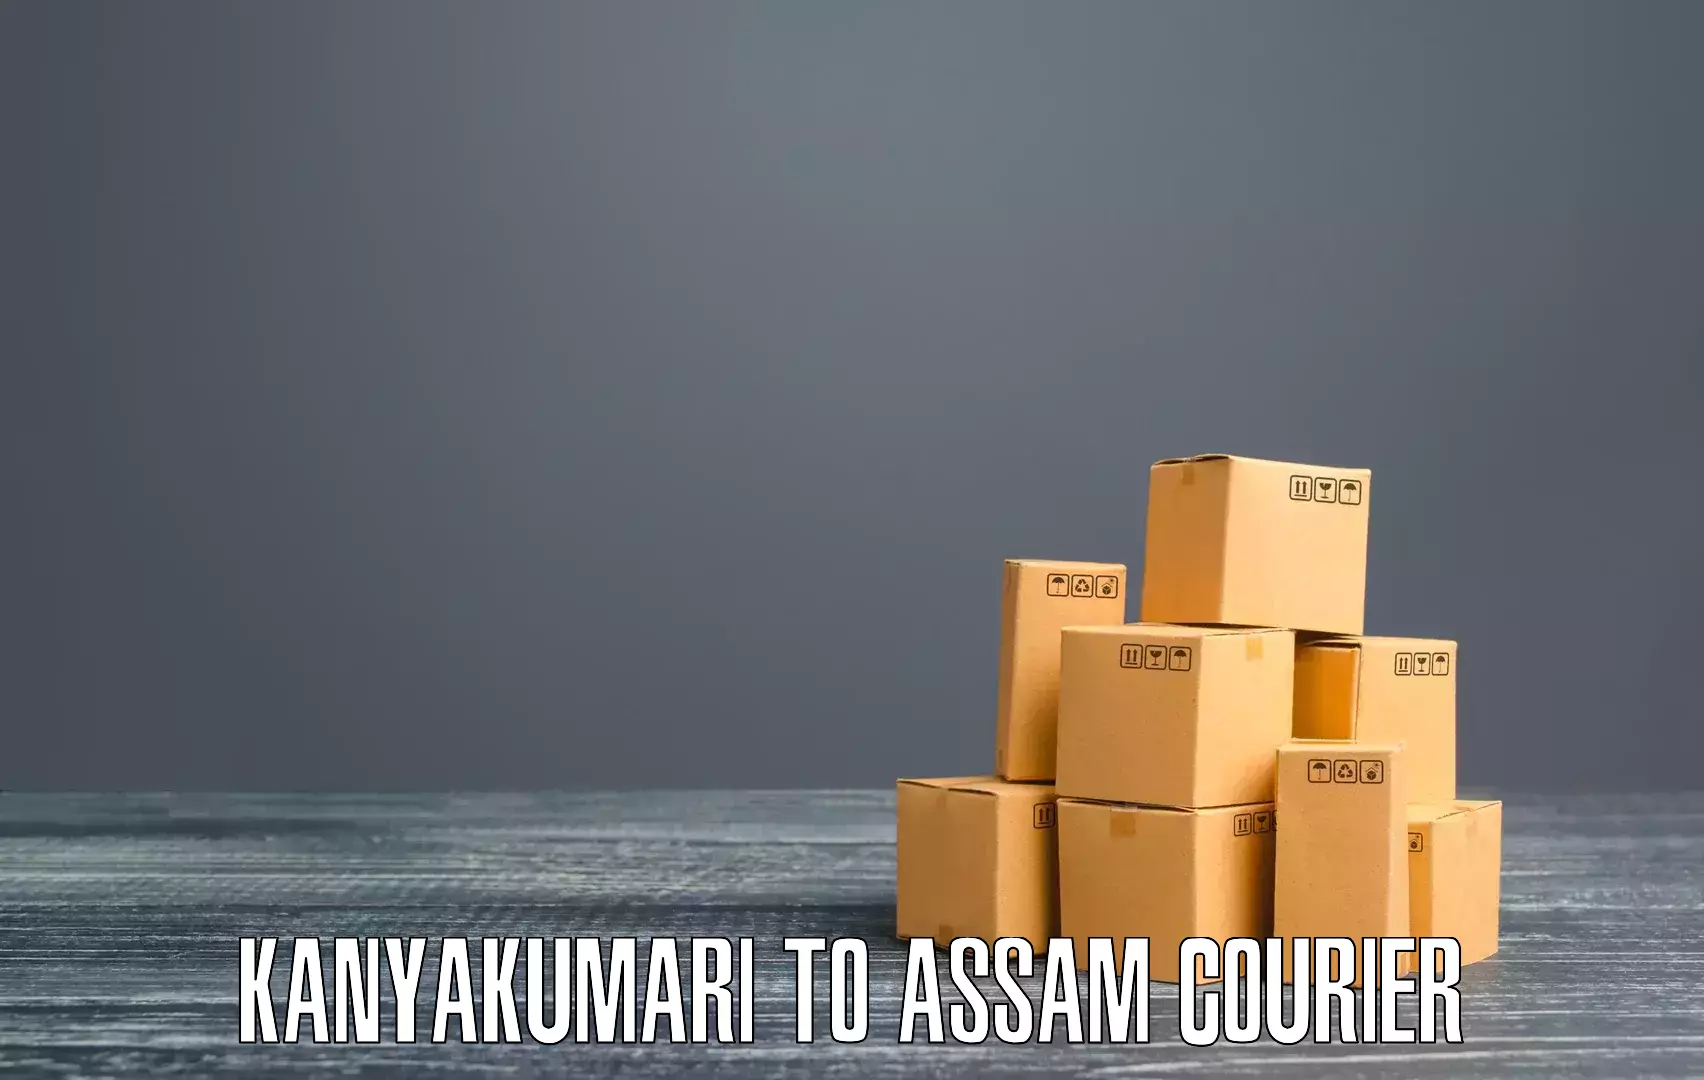 Smart courier technologies Kanyakumari to Assam